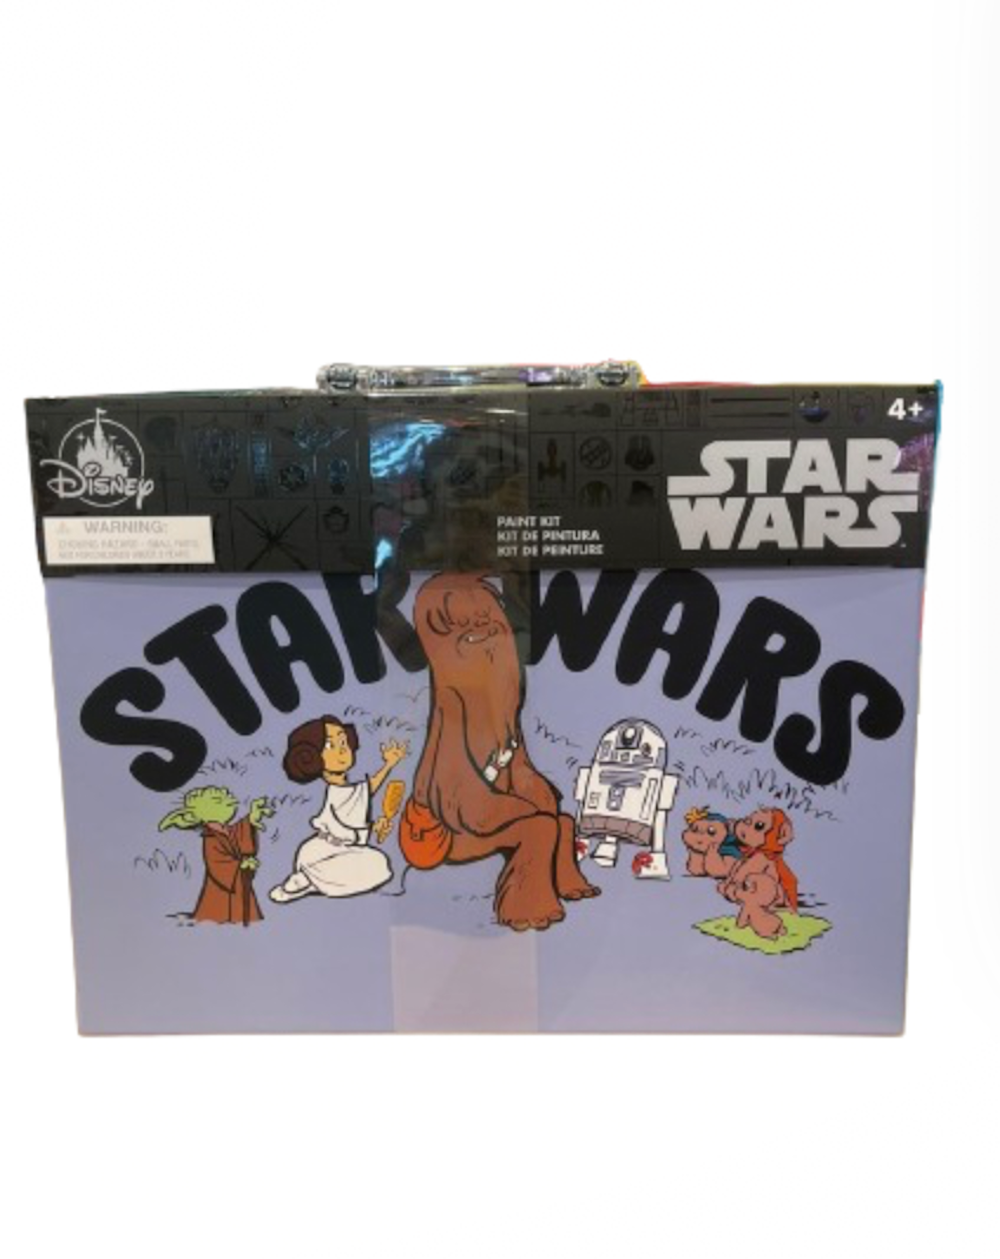 Disney Parks Star Wars Cuties Paint Kit Case Watercolor Paints Pastels New w Tag